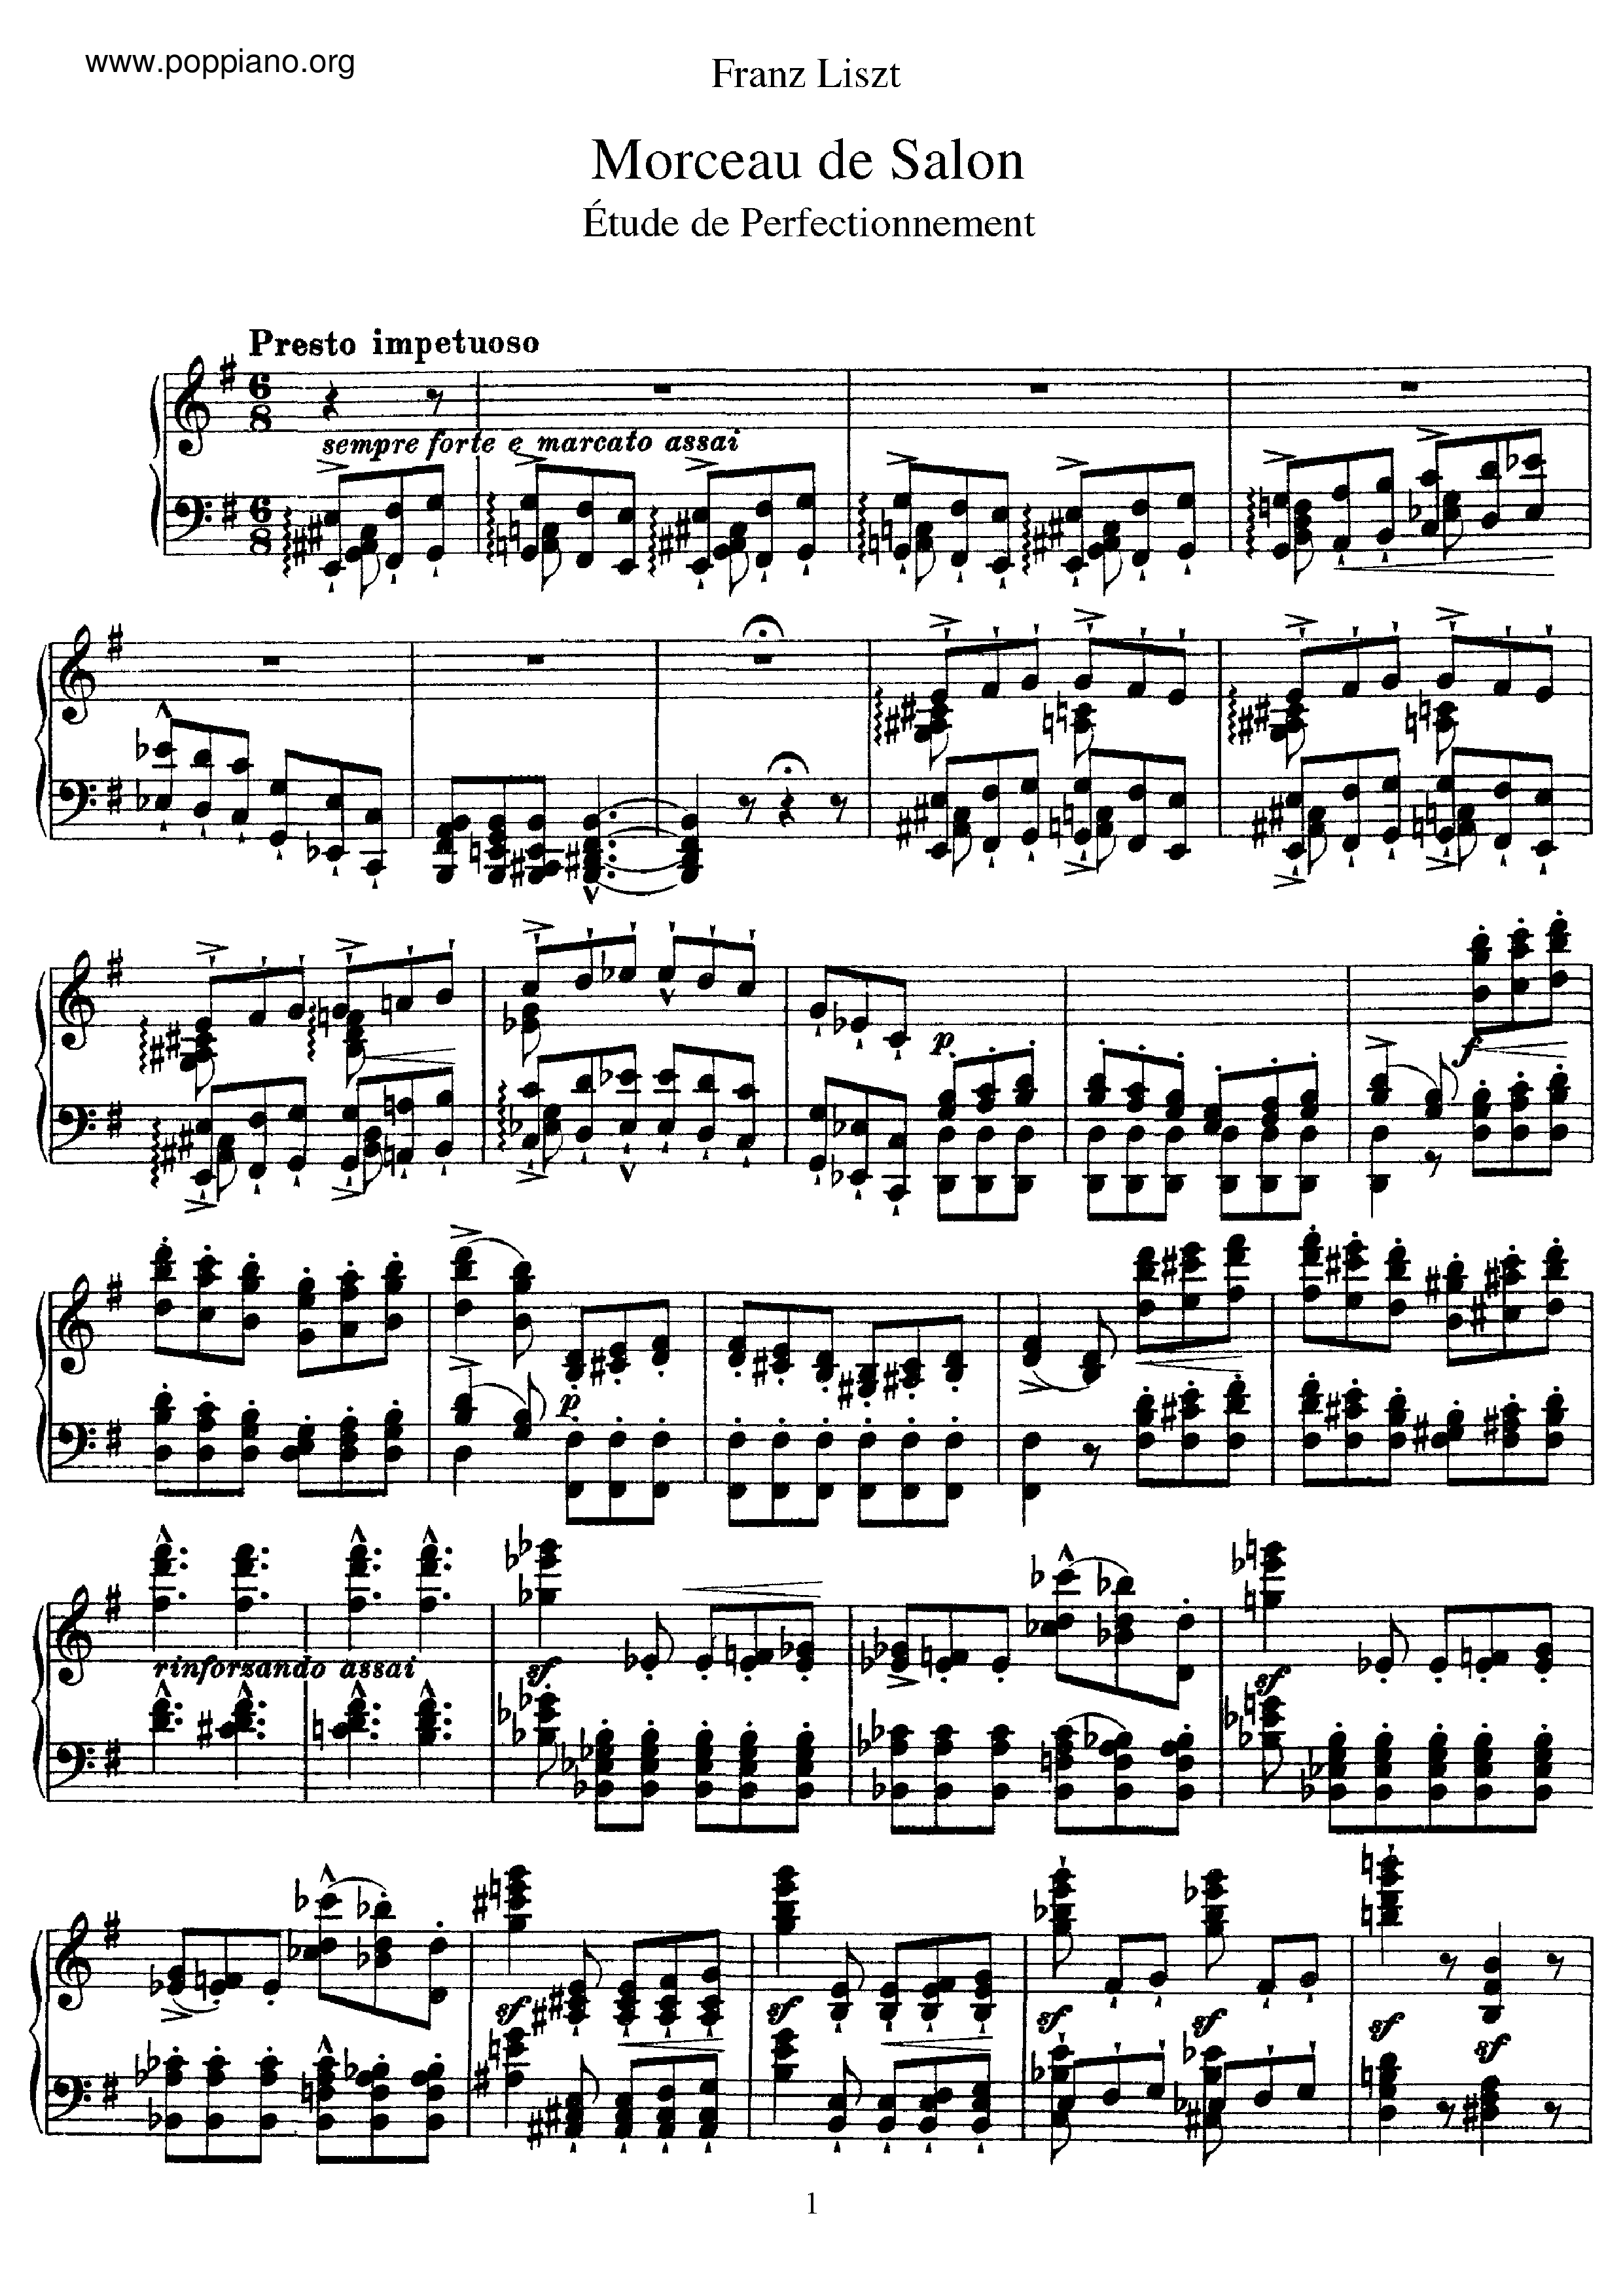 Morceau de Salon, Etude de perfectionnement, S.142 Score